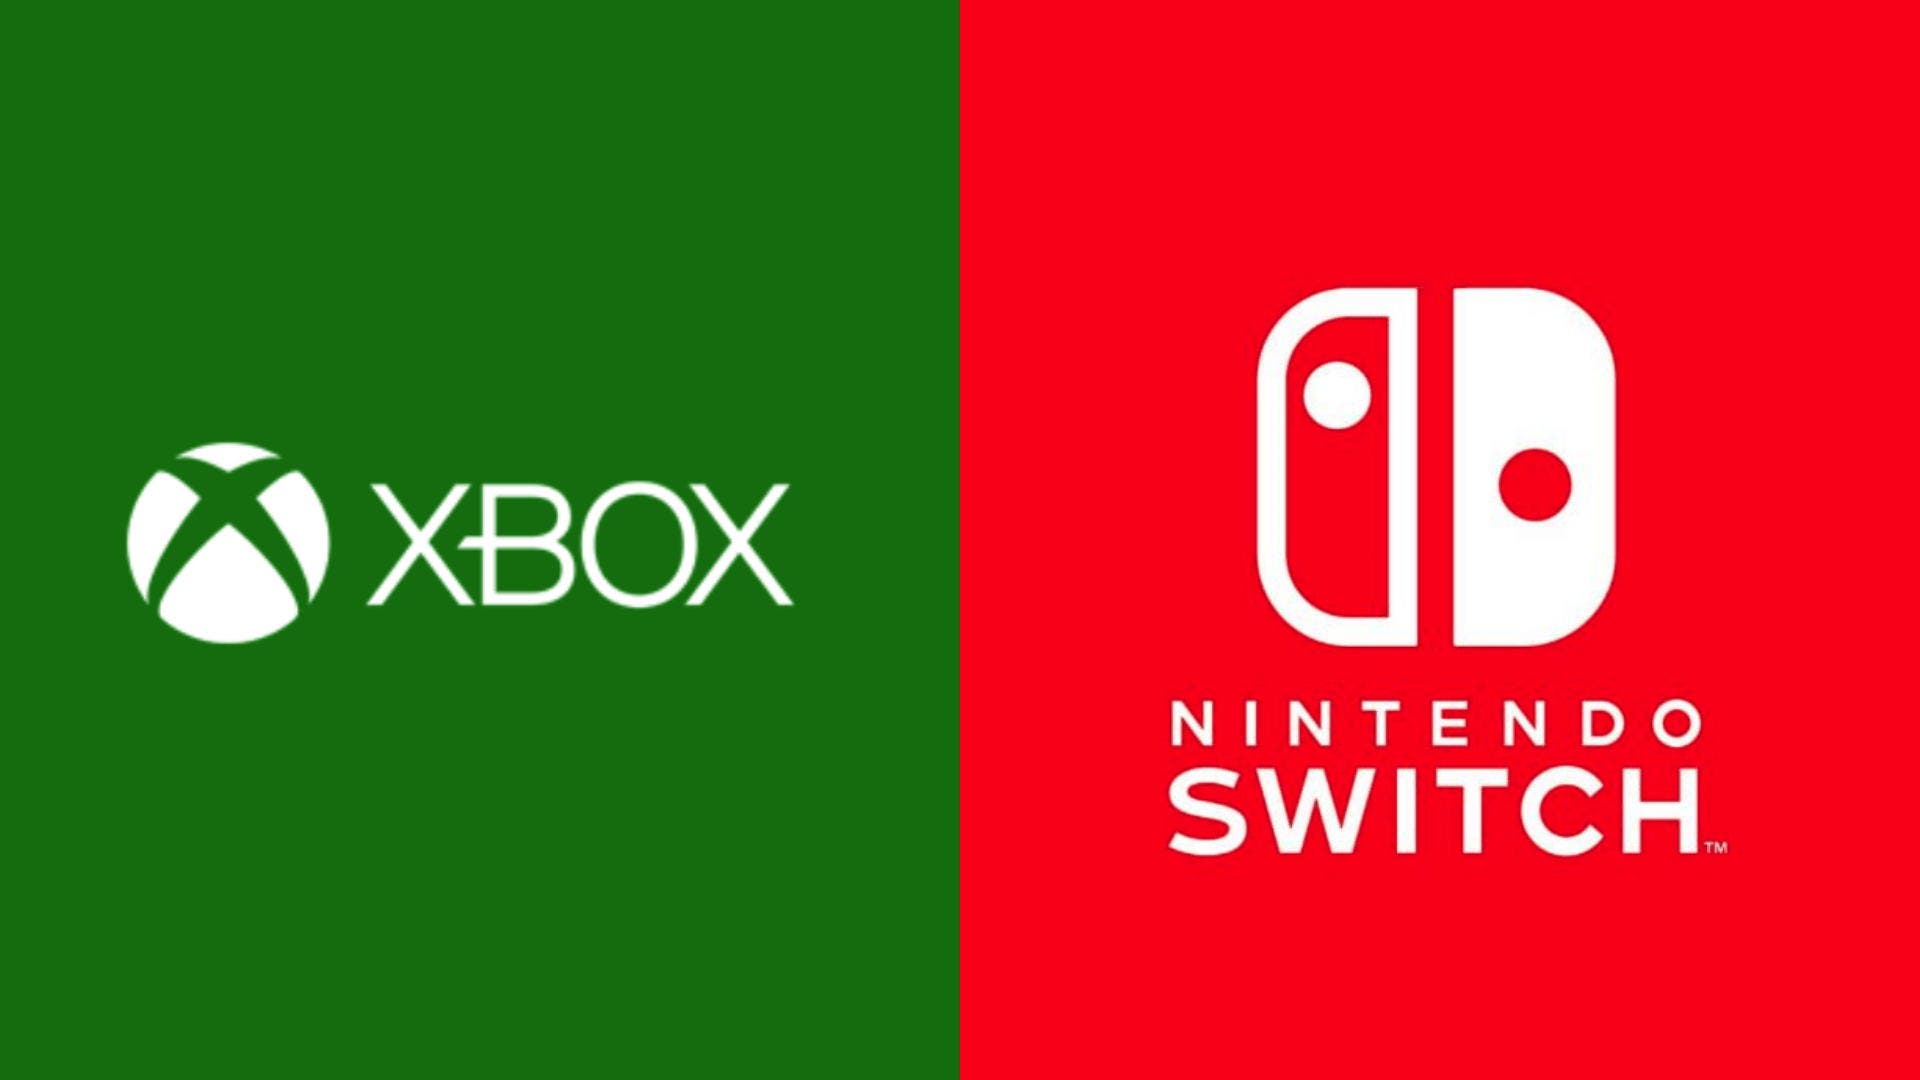 Nintendo reclama extractos de la disputa entre Epic y Apple por contener “información sensible” de negociaciones con Microsoft